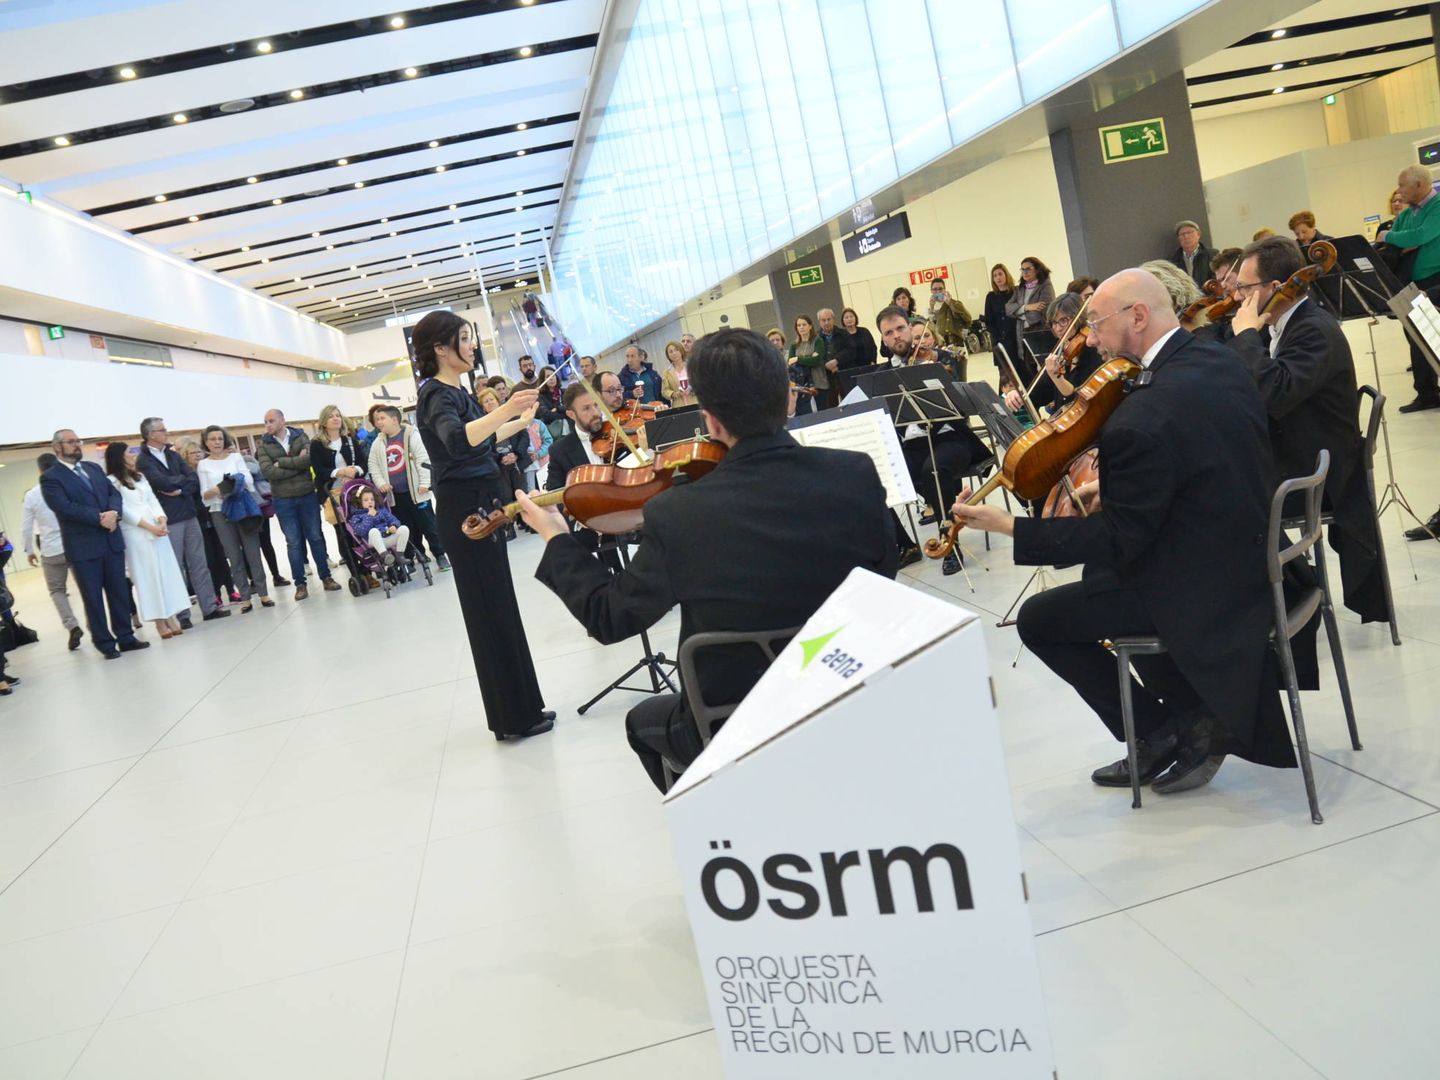 Actuación de la Orquesta Sinfónica de la Región de Murcia en el aeropuerto